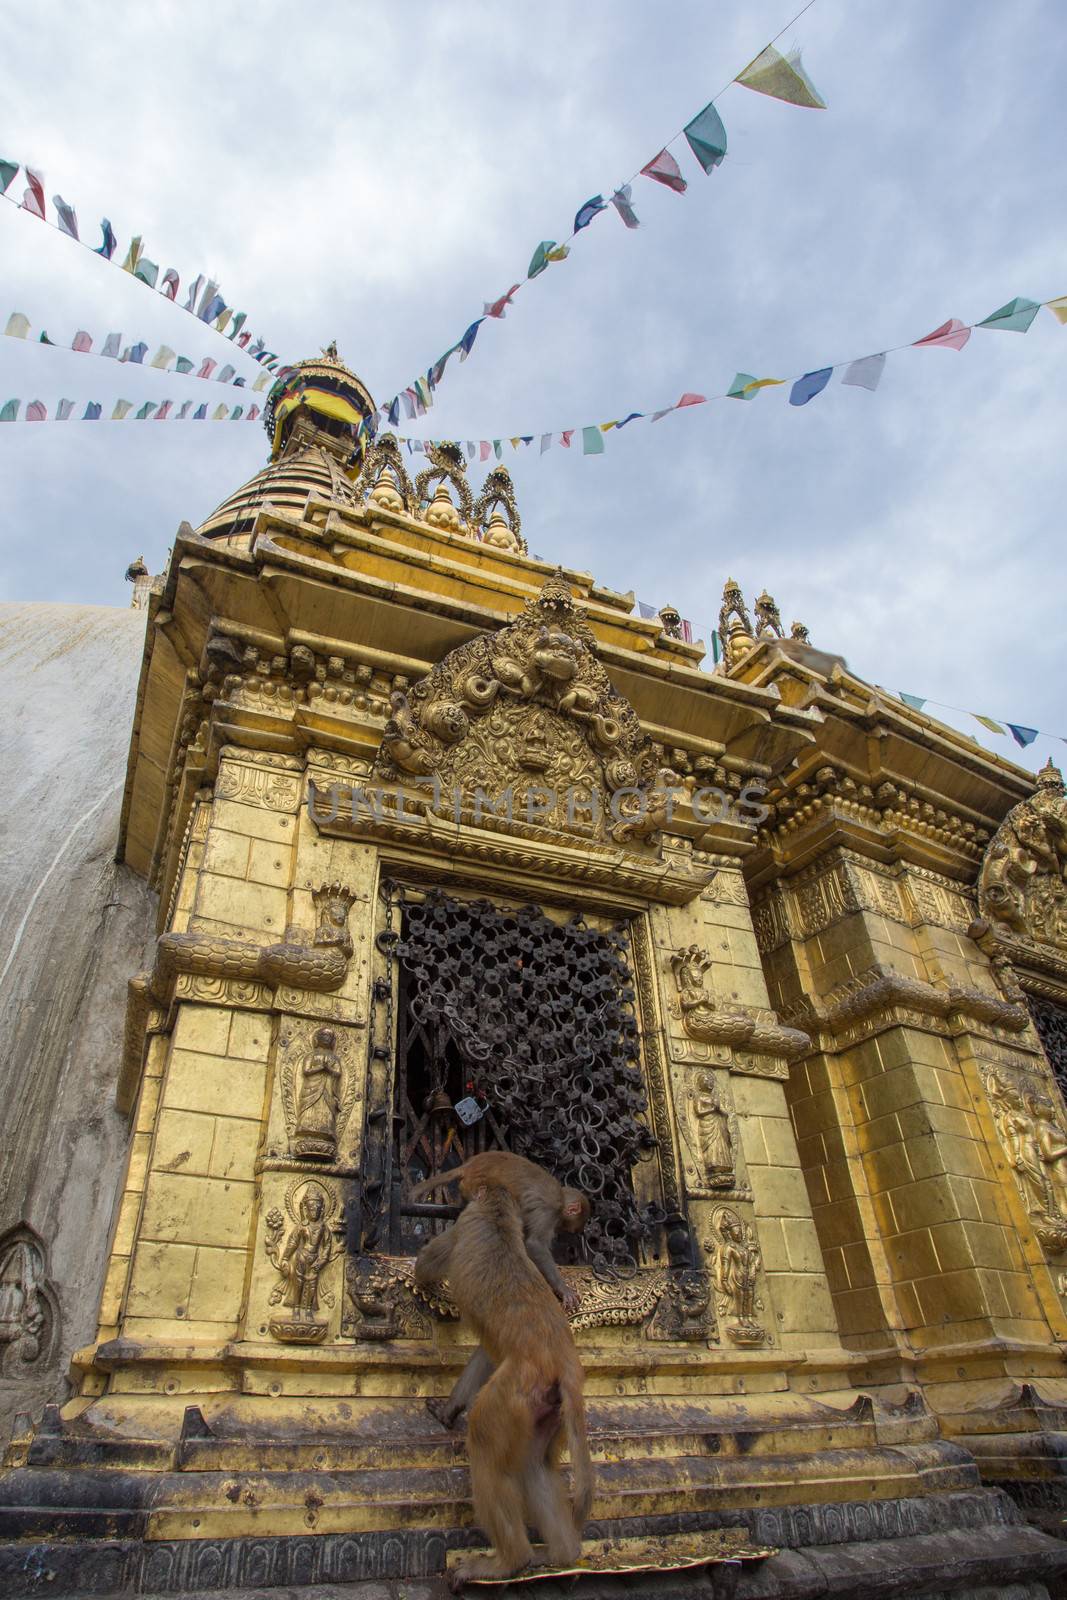 A monkey on swayambhunath stupa in Kathmandu, Nepal